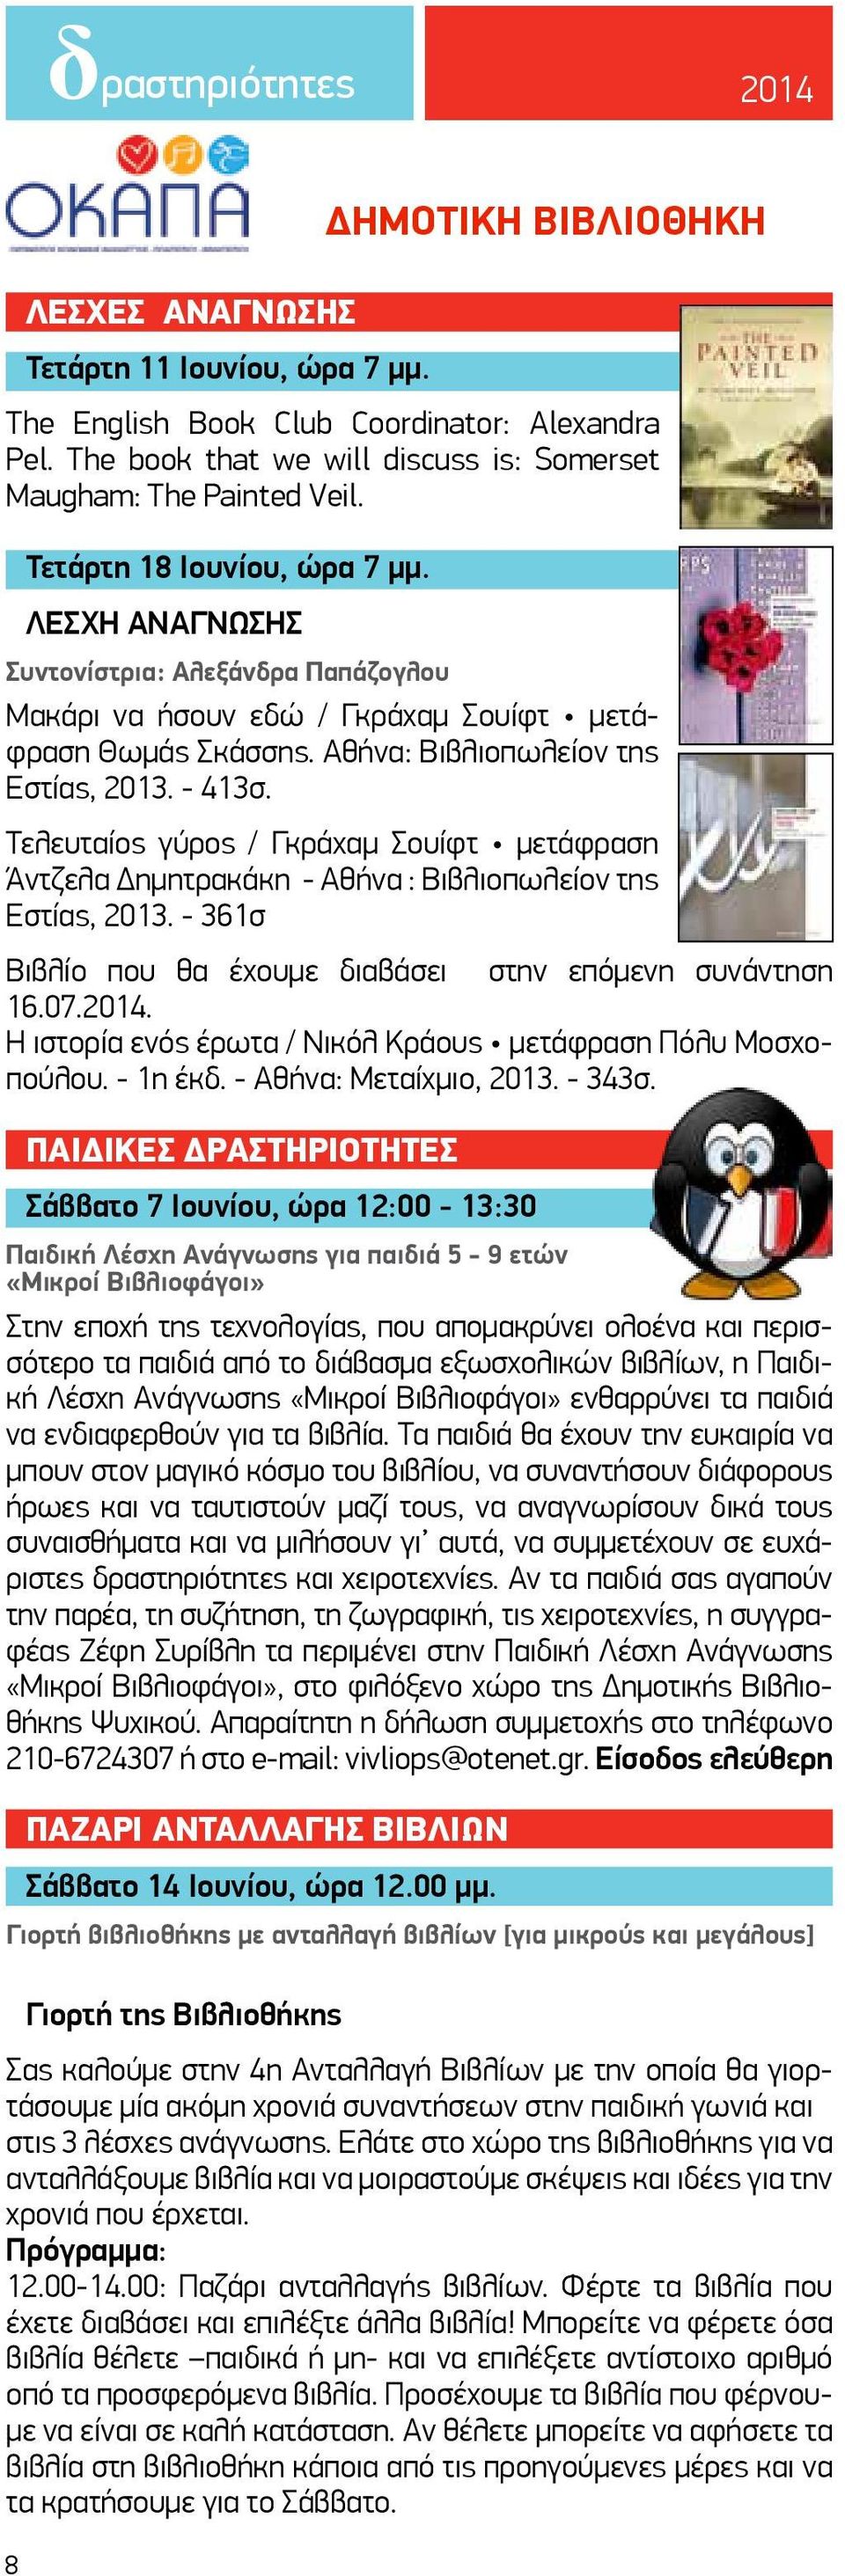 Τελευταίος γύρος / Γκράχαμ Σουίφτ μετάφραση Άντζελα Δημητρακάκη - Αθήνα : Βιβλιοπωλείον της Εστίας, 2013. - 361σ Βιβλίο που θα έχουμε διαβάσει στην επόμενη συνάντηση 16.07.2014.